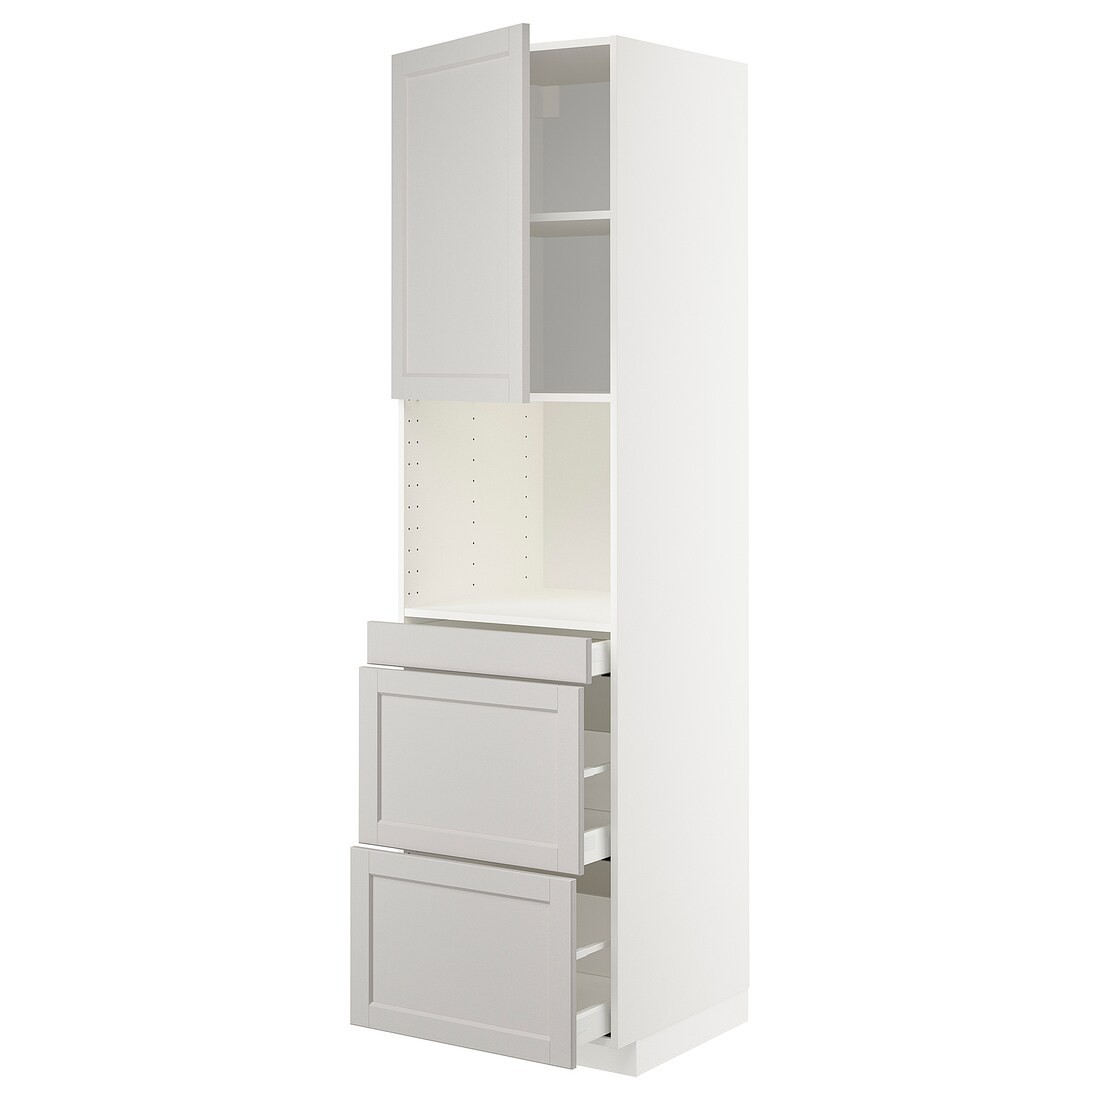 IKEA METOD МЕТОД / MAXIMERA МАКСИМЕРА Высокий шкаф для СВЧ / дверца / 3 ящика, белый / Lerhyttan светло-серый, 60x60x220 см 99463355 | 994.633.55